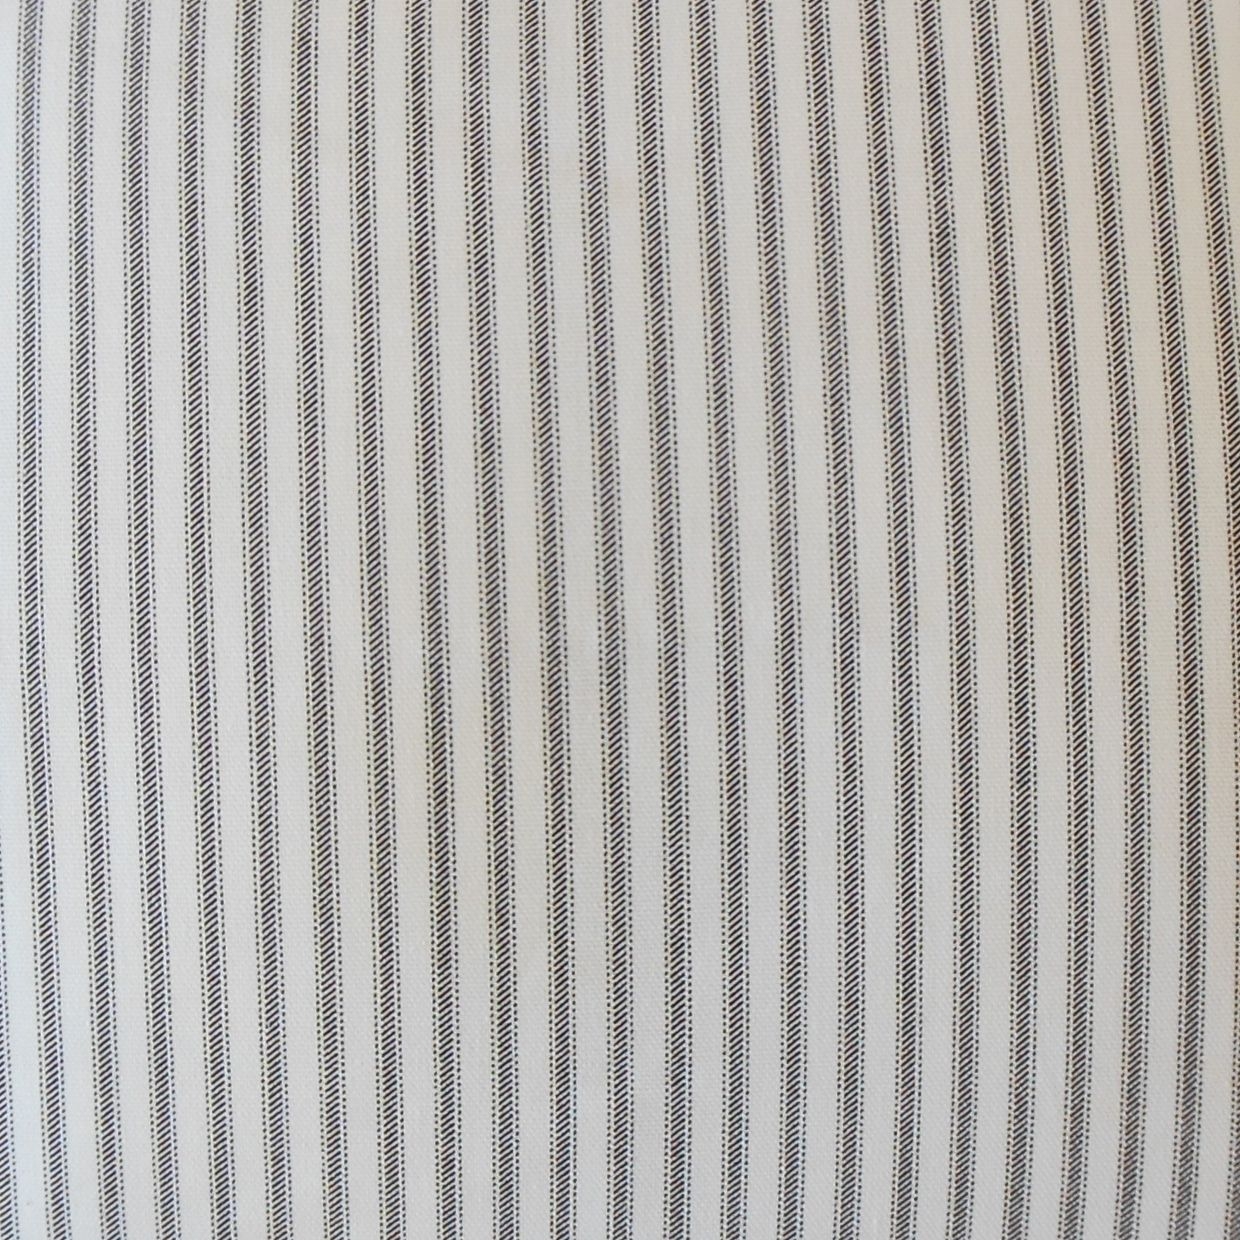 Ticking Stripe Pillow, Navy, 22" x 22" - Image 1